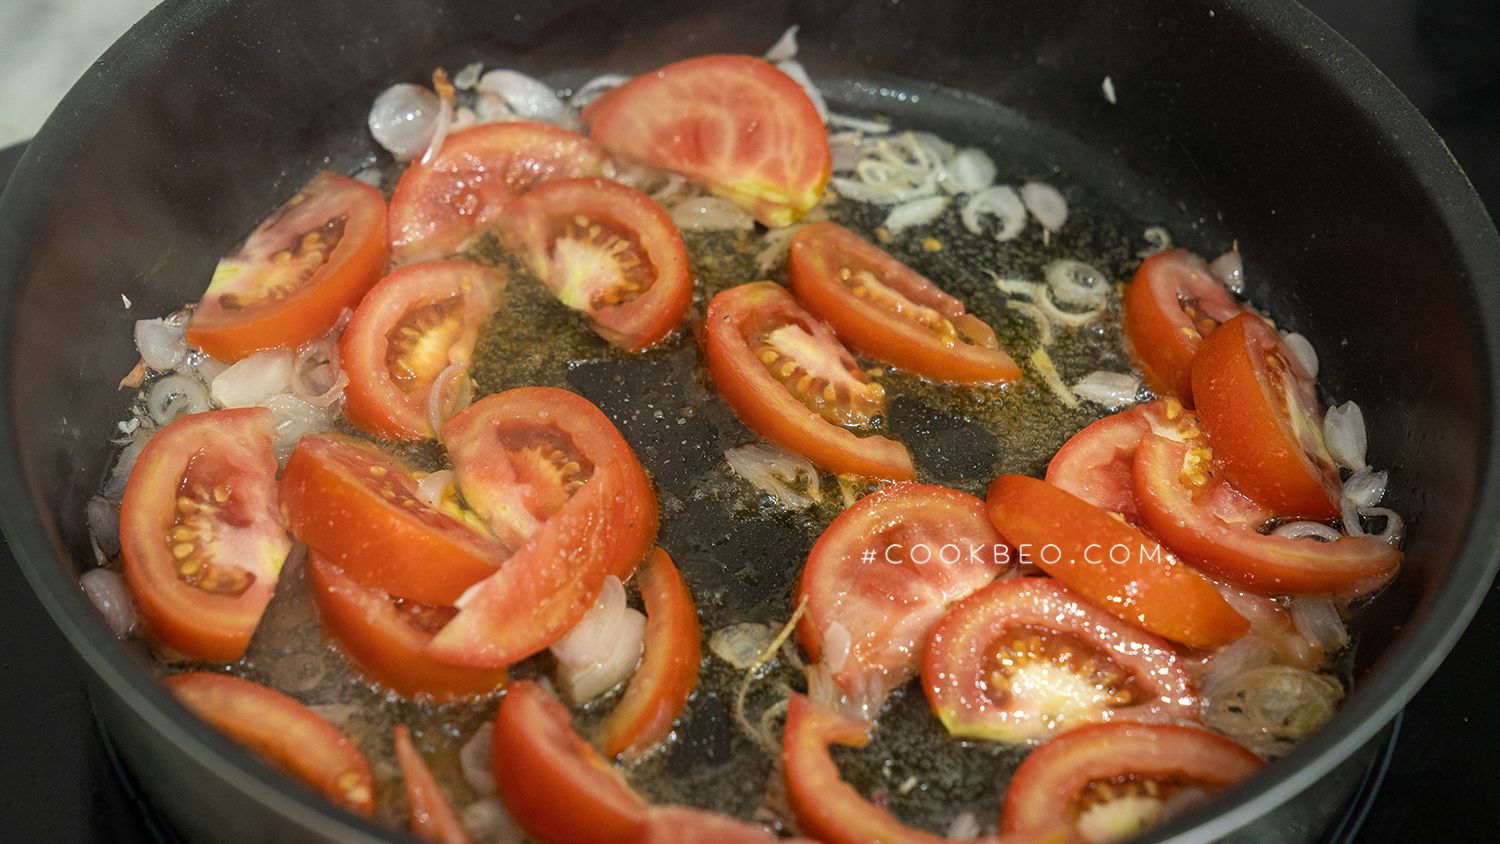 Cách nấu canh bắp cải cà chua, món canh dễ nấu, dễ ngon, rất hợp ngày bận rộn - Ảnh 3